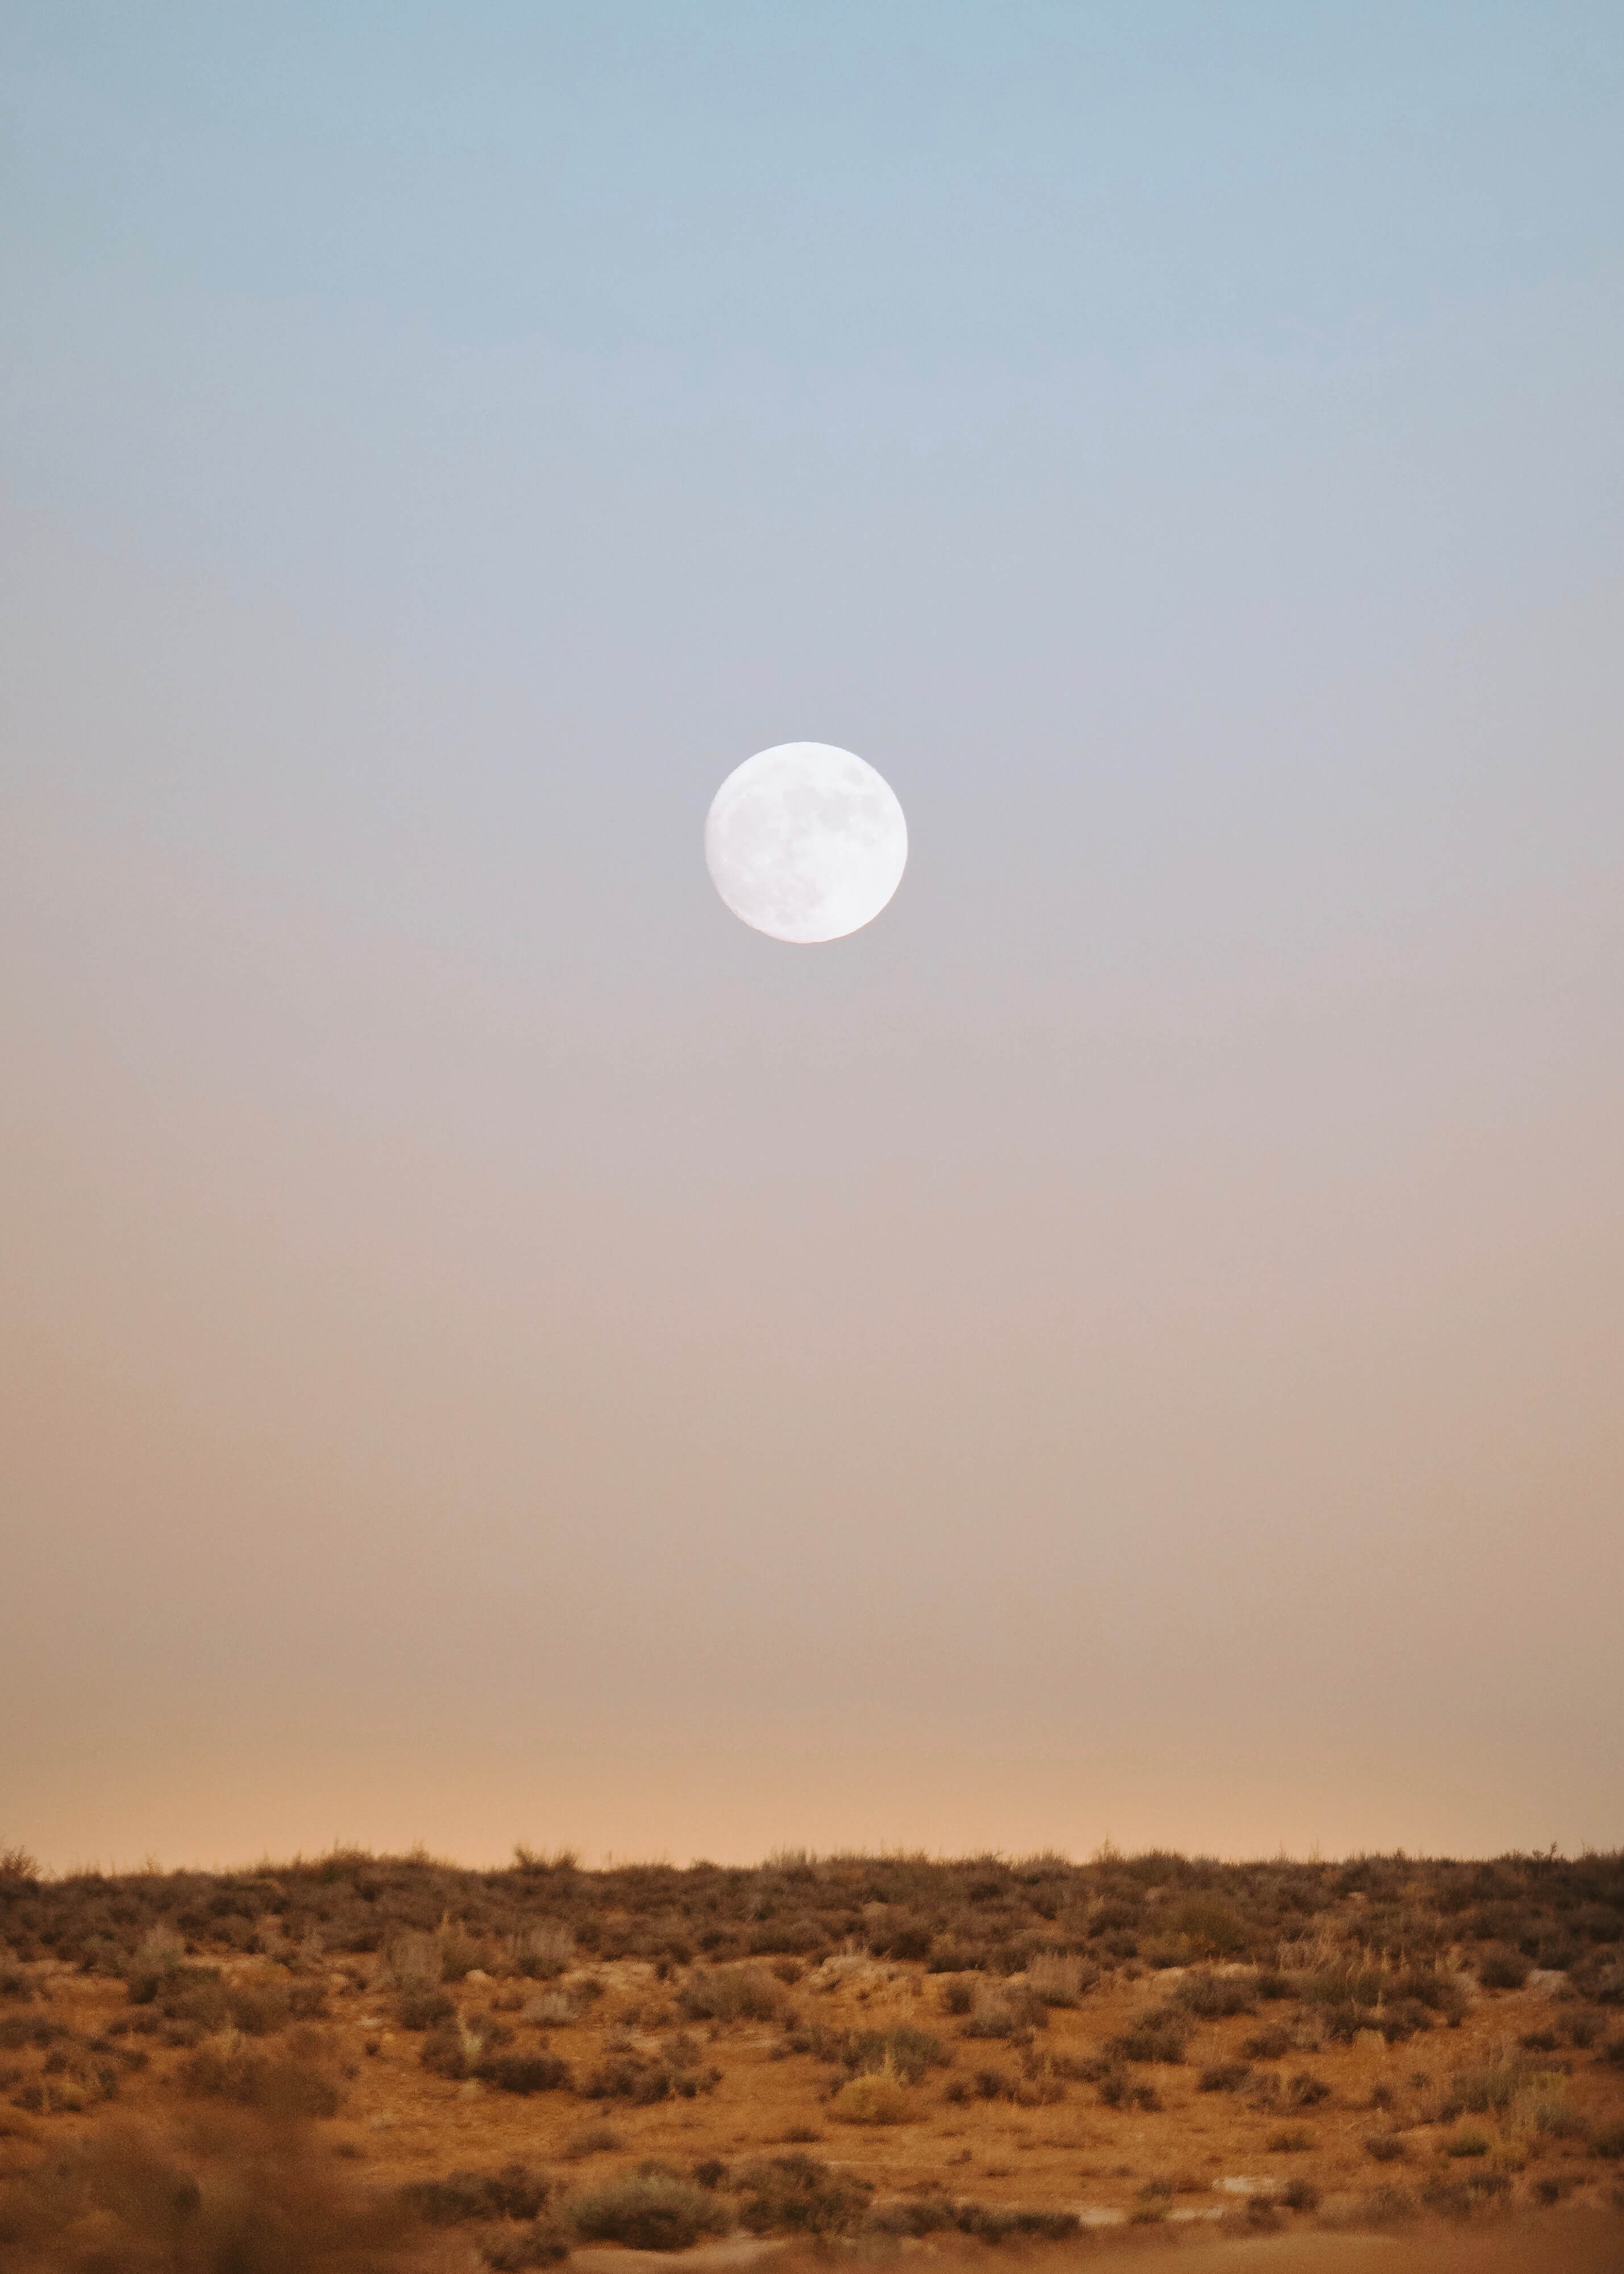 Emilie Restevski photo of full moon above desert landscape at dusk